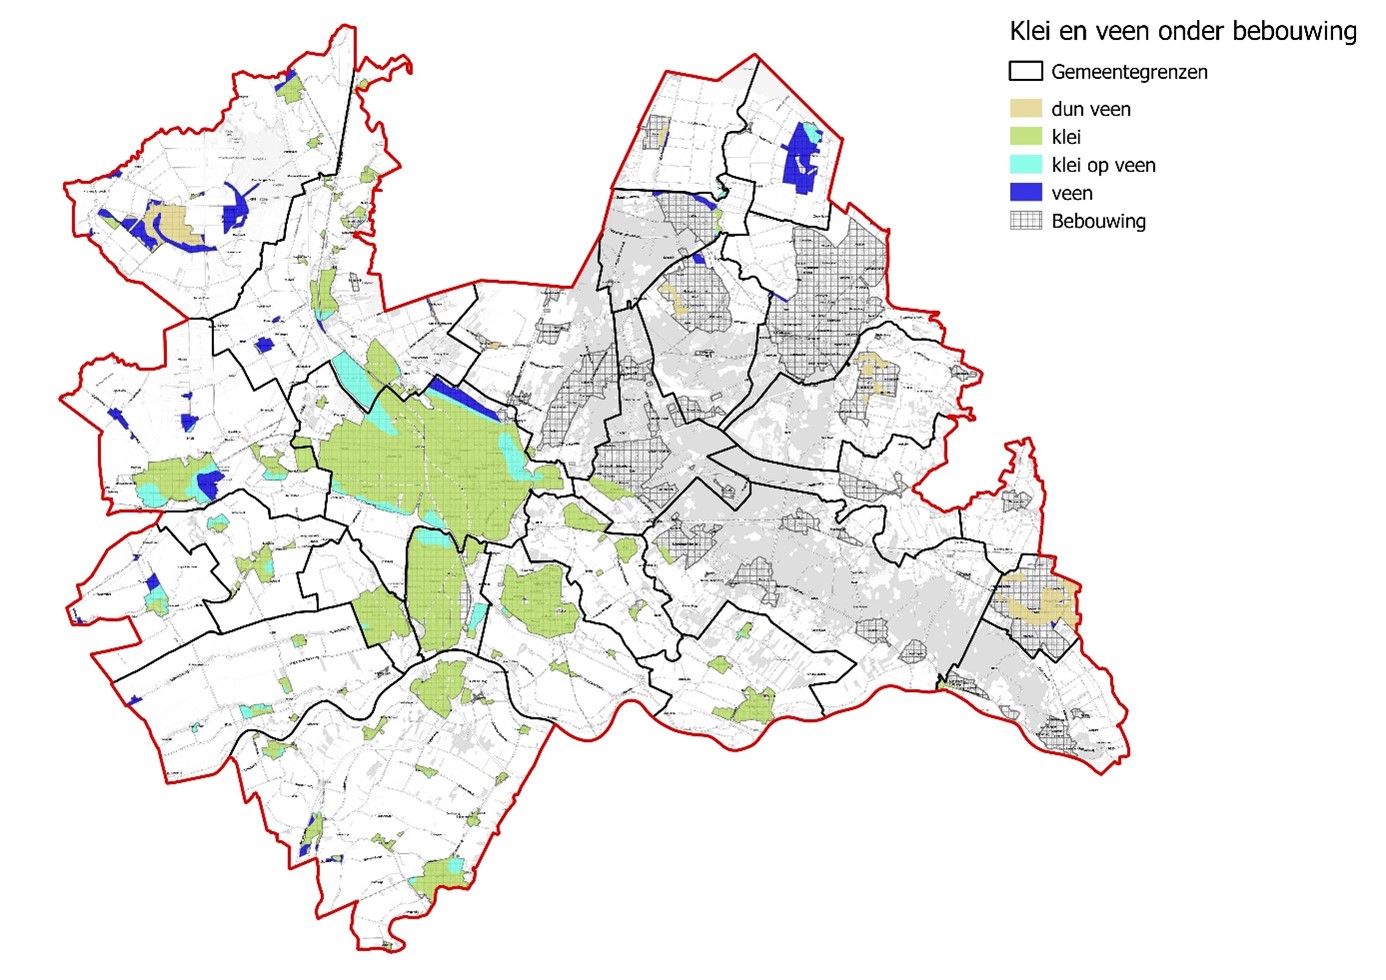 Klei- en veengrond in bebouwd gebied provincie Utrecht (2015)